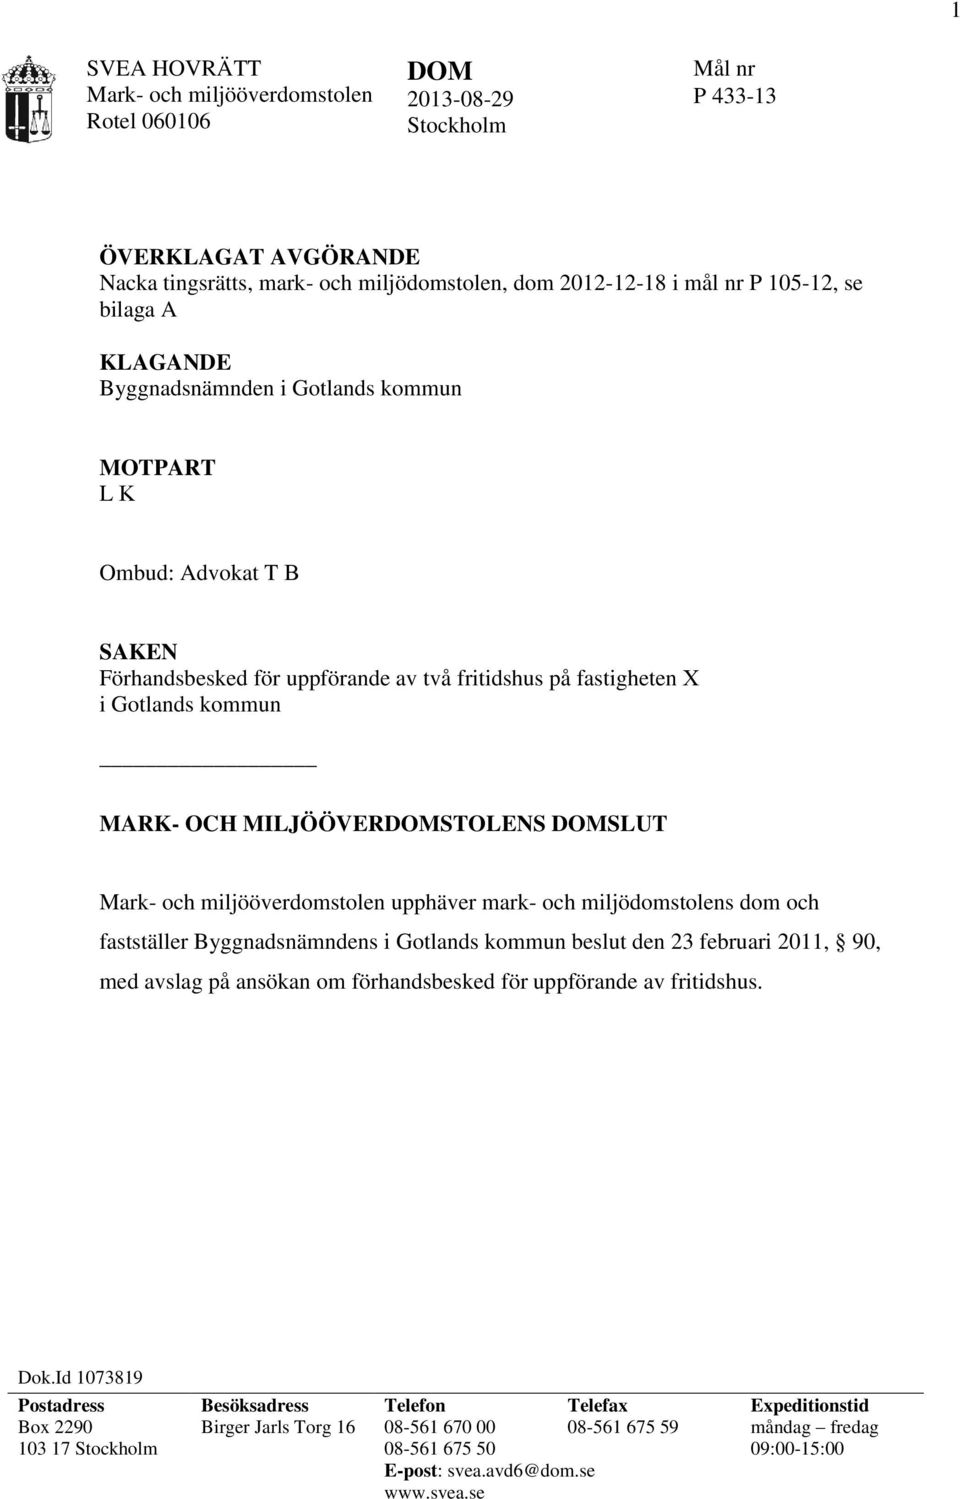 SLUT Mark- och miljööverdomstolen upphäver mark- och miljödomstolens dom och fastställer Byggnadsnämndens i Gotlands kommun beslut den 23 februari 2011, 90, med avslag på ansökan om förhandsbesked